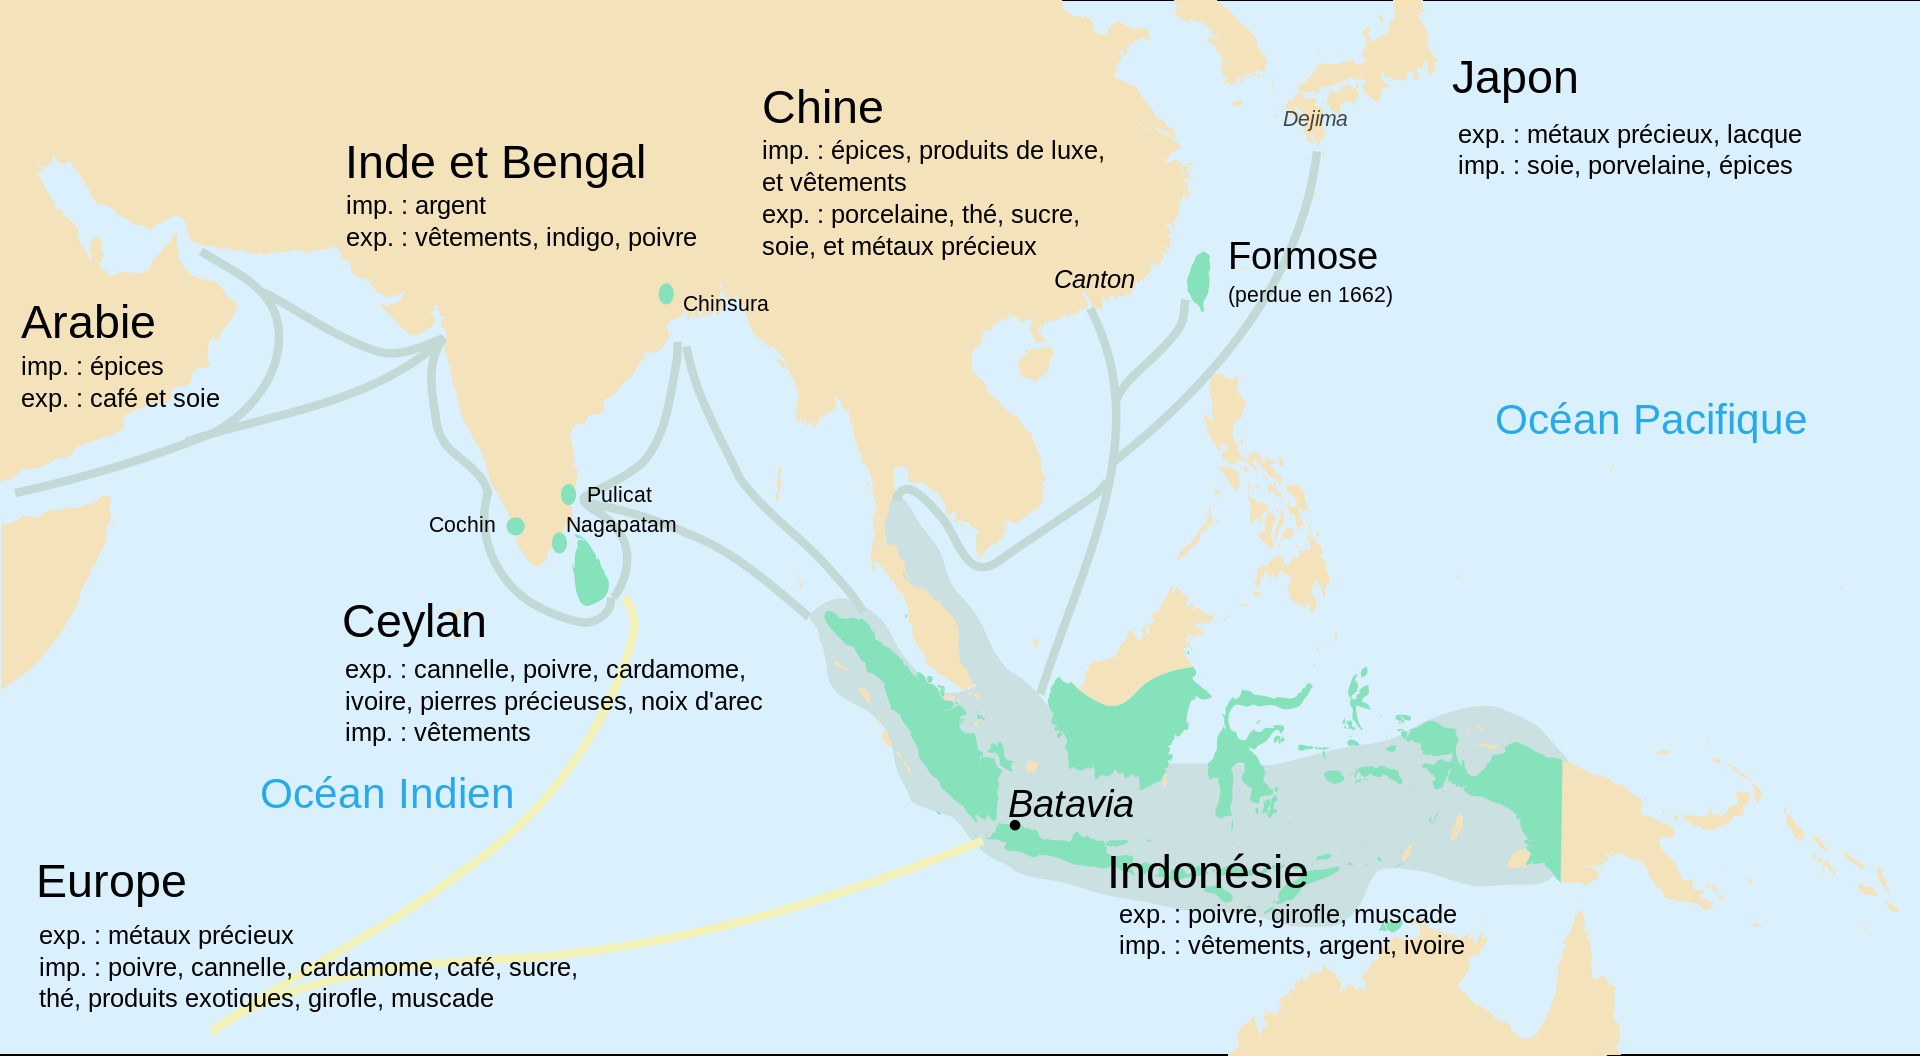 circuits d'importation et d'exportation de produits précieux dans l'Océan Indien au 17e siècle